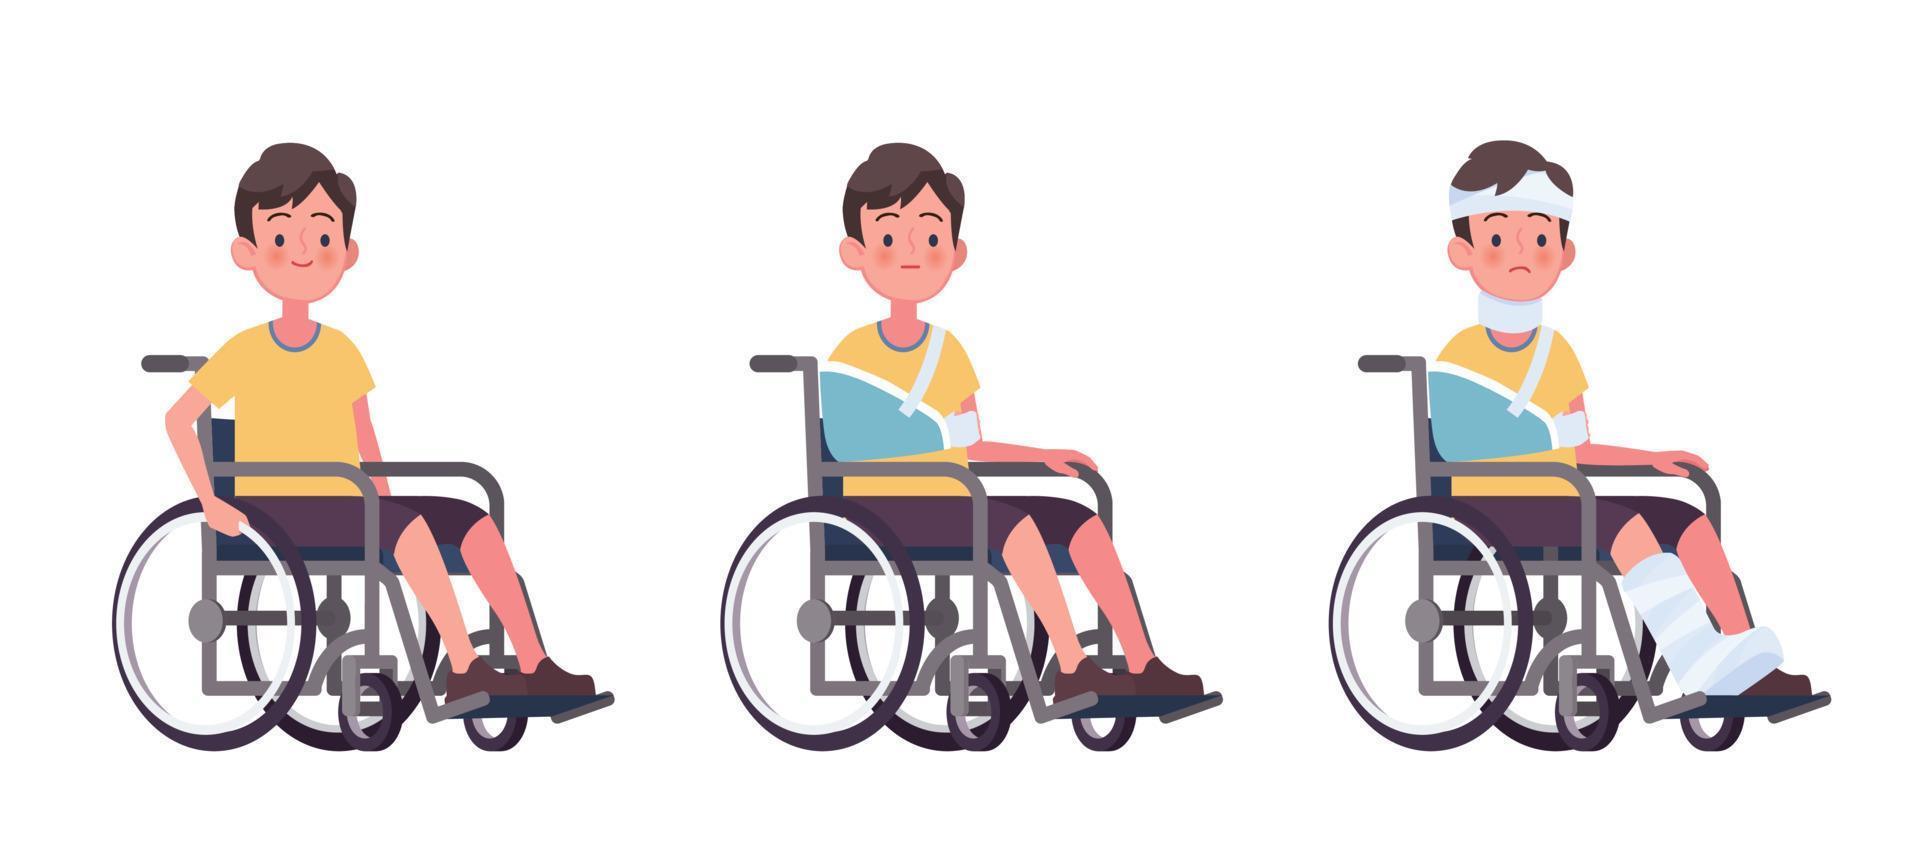 joven en juego de sillas de ruedas, ilustración vectorial de dibujos animados. concepto de lesión y discapacidad, rehabilitación por accidente. vector